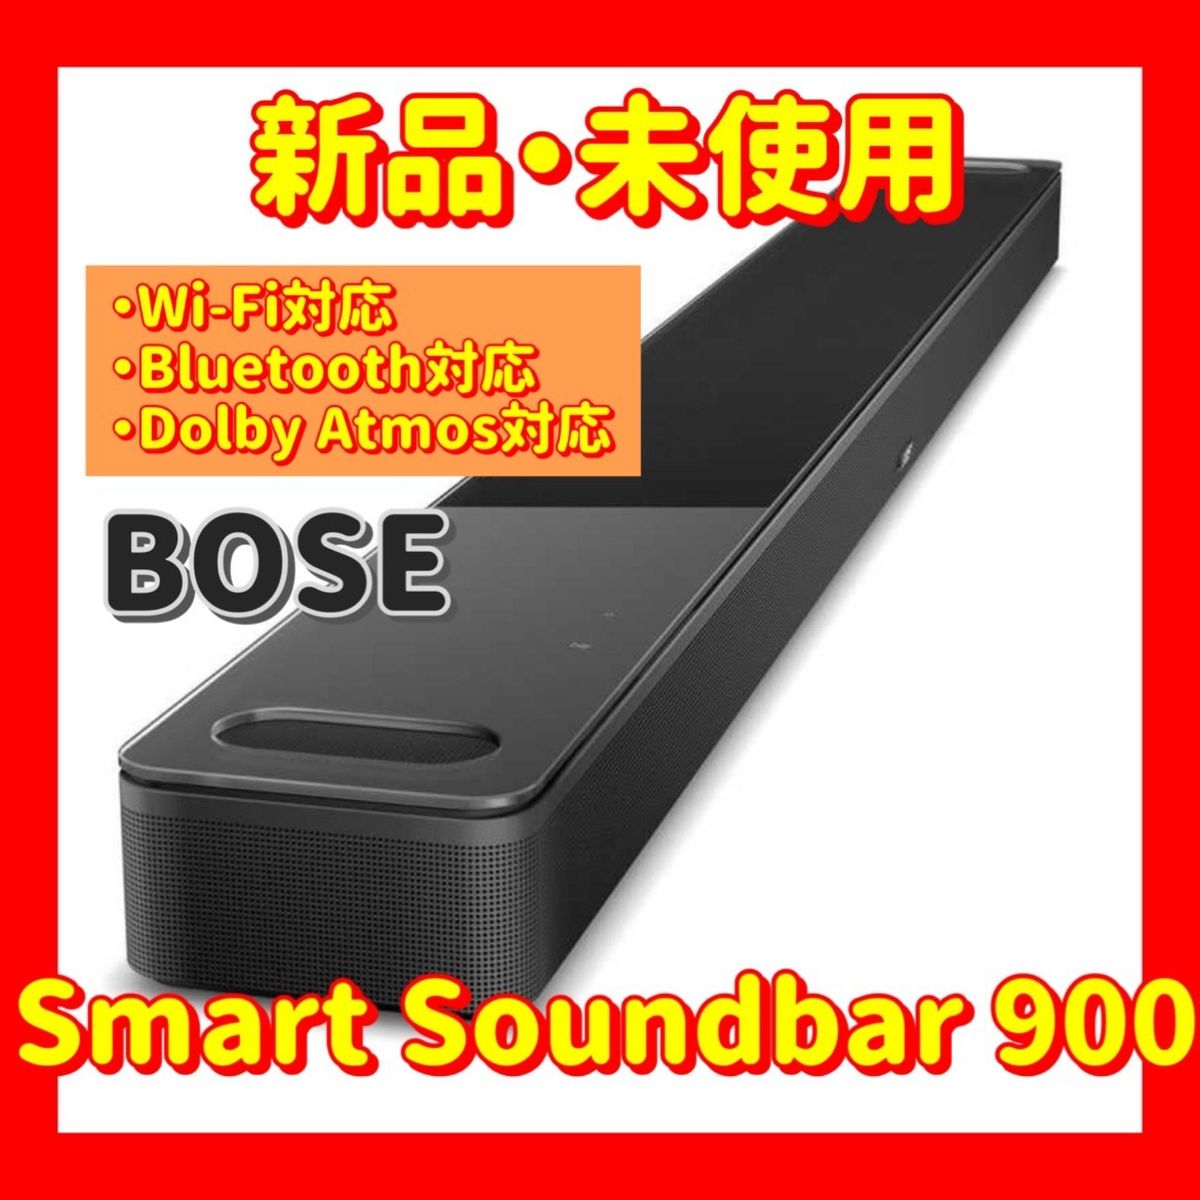 10/16まで値下げ Bose Smart Soundbar 900 スマートサウンドバー